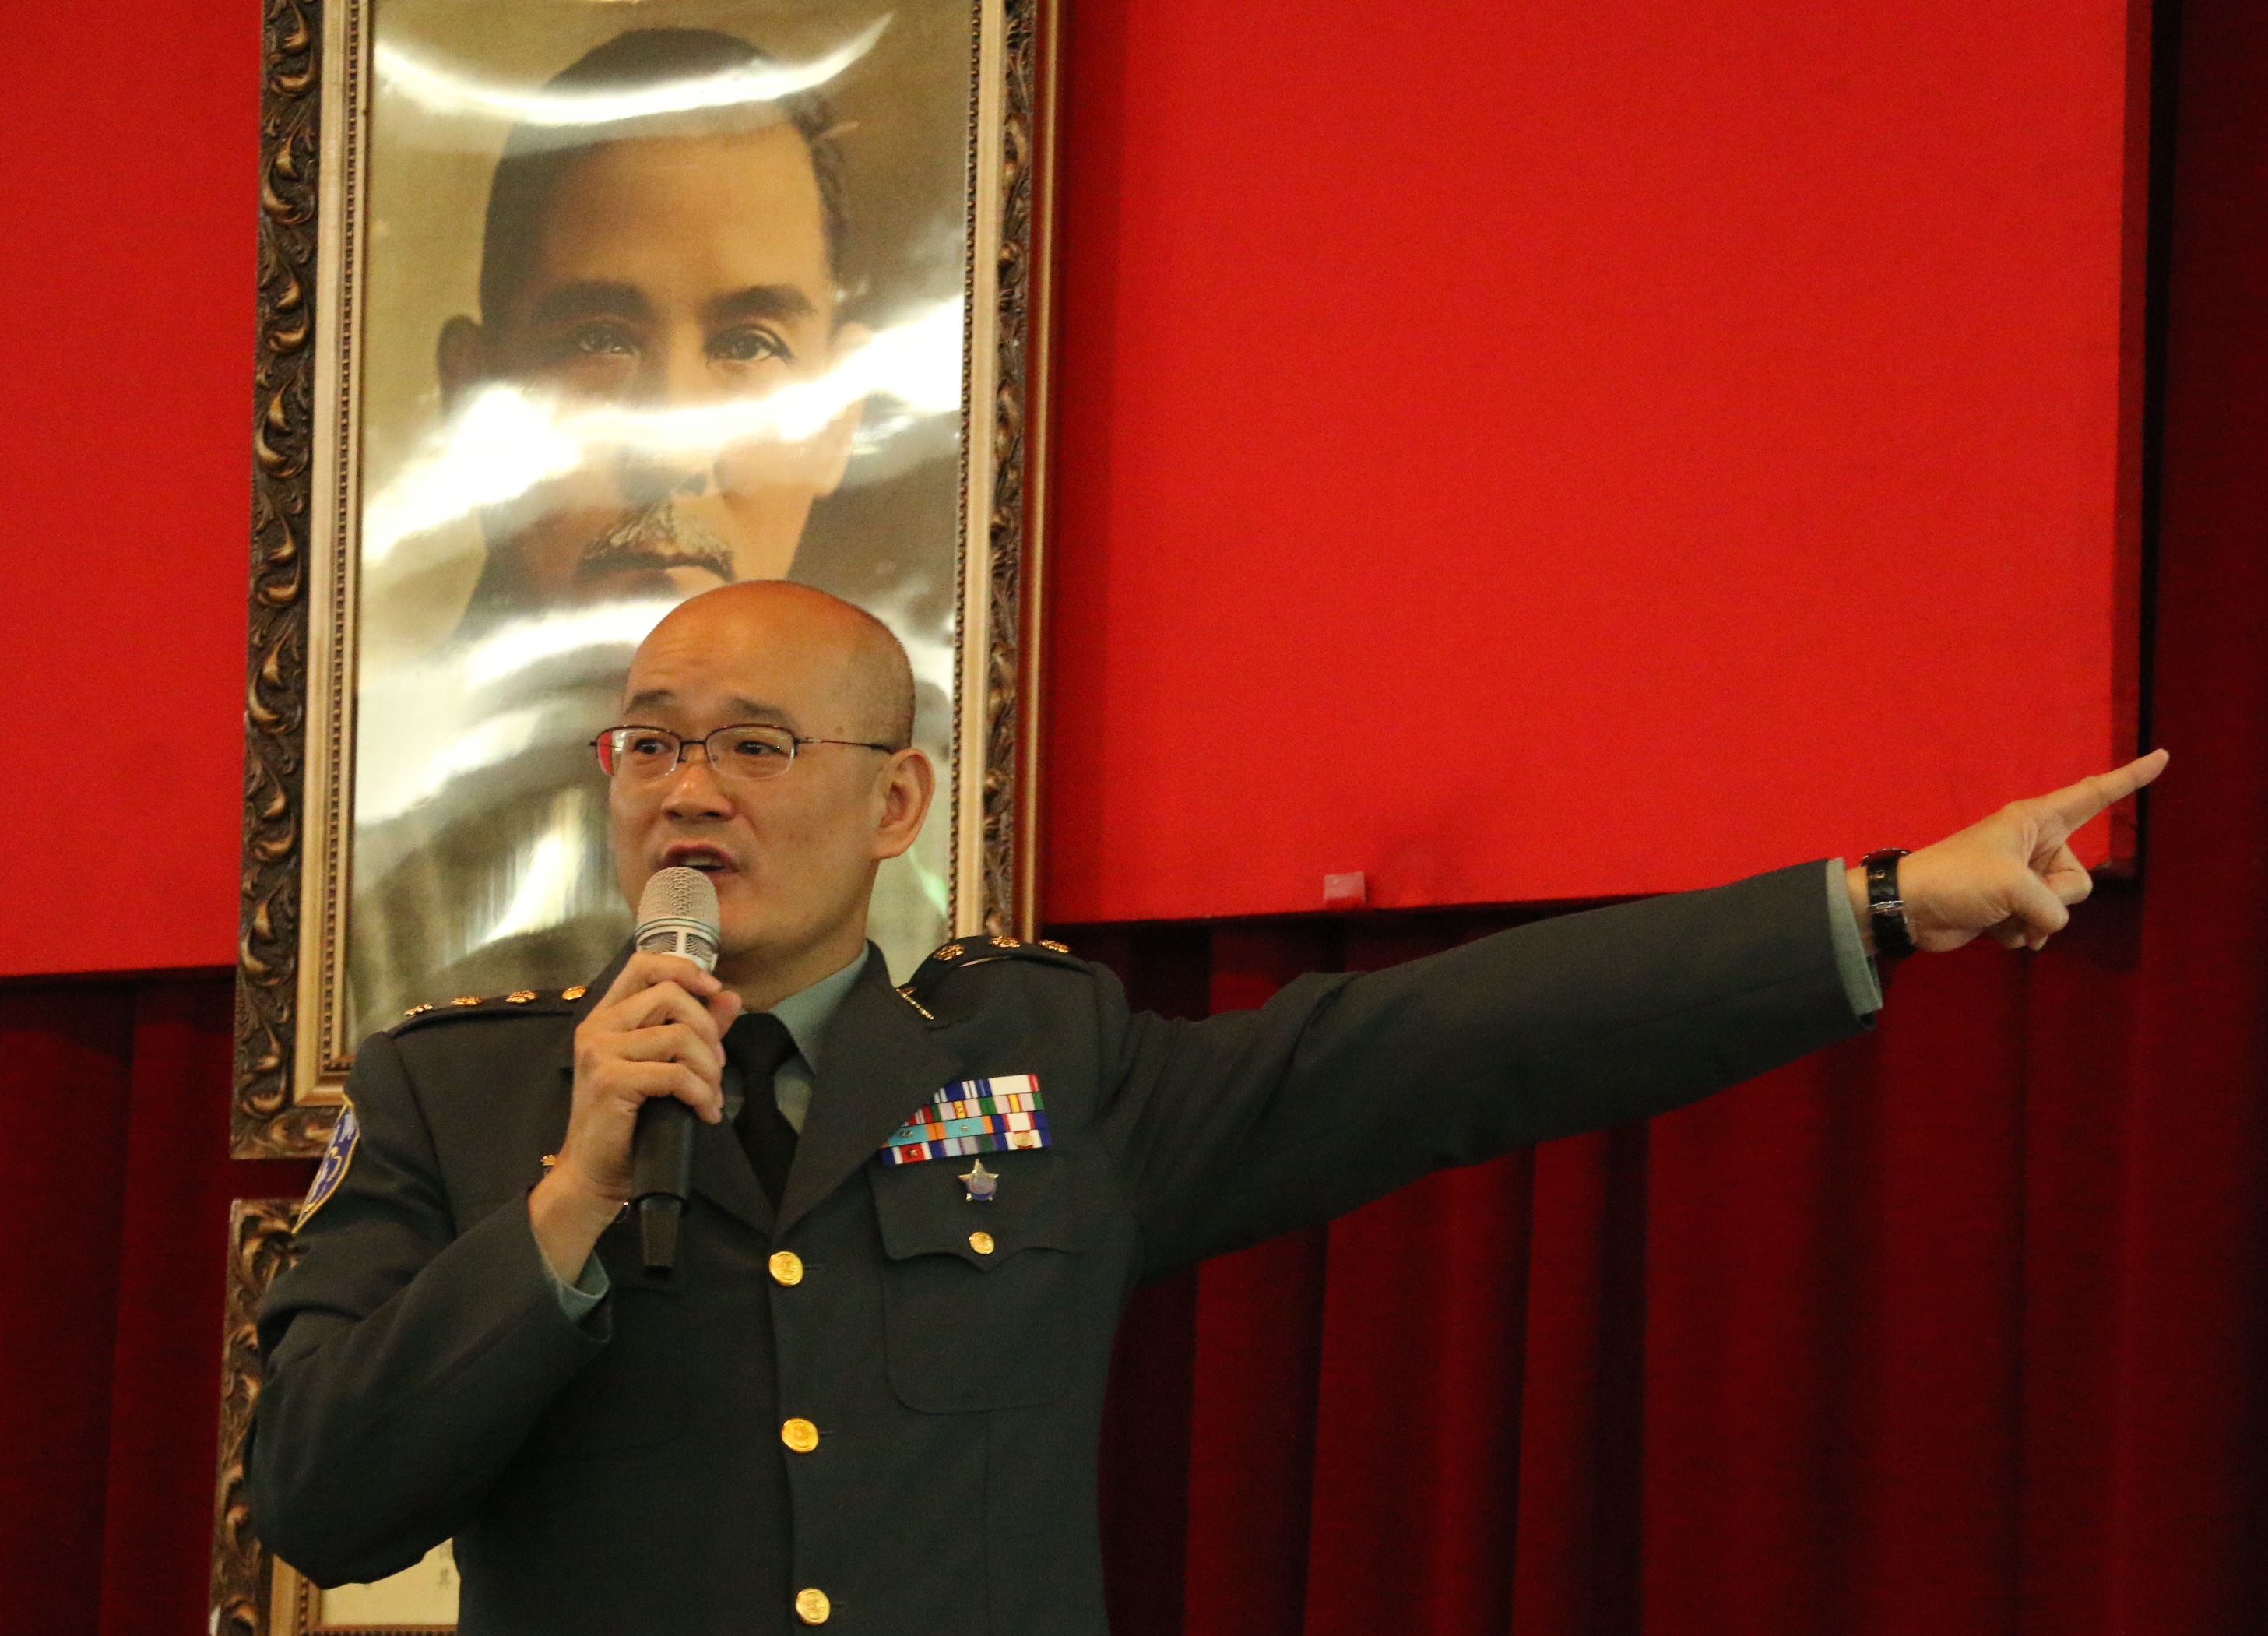 輔導會「紀念對日抗戰八十週年」專題演講 主講人:王惠民上校